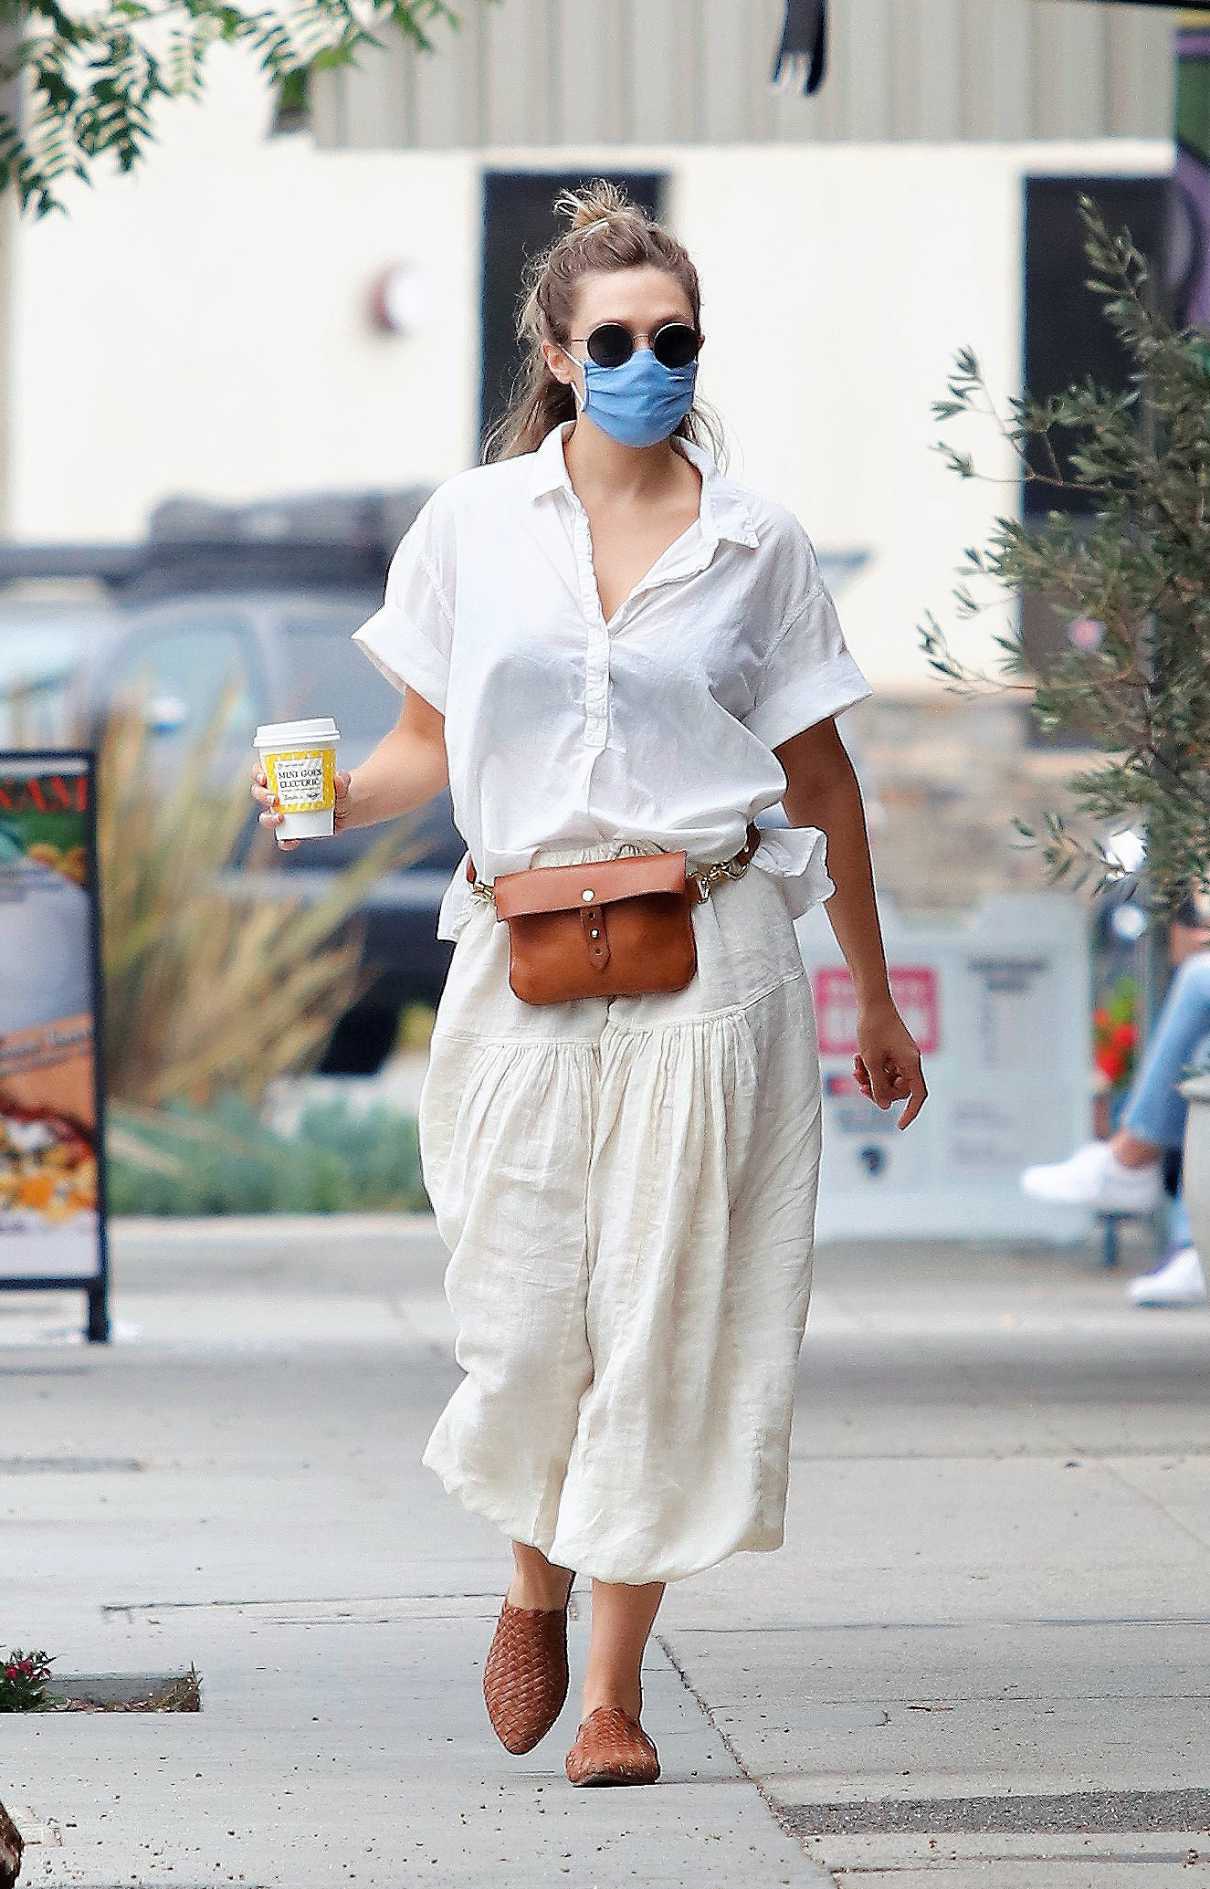 Elizabeth Olsen in a Protective Mask